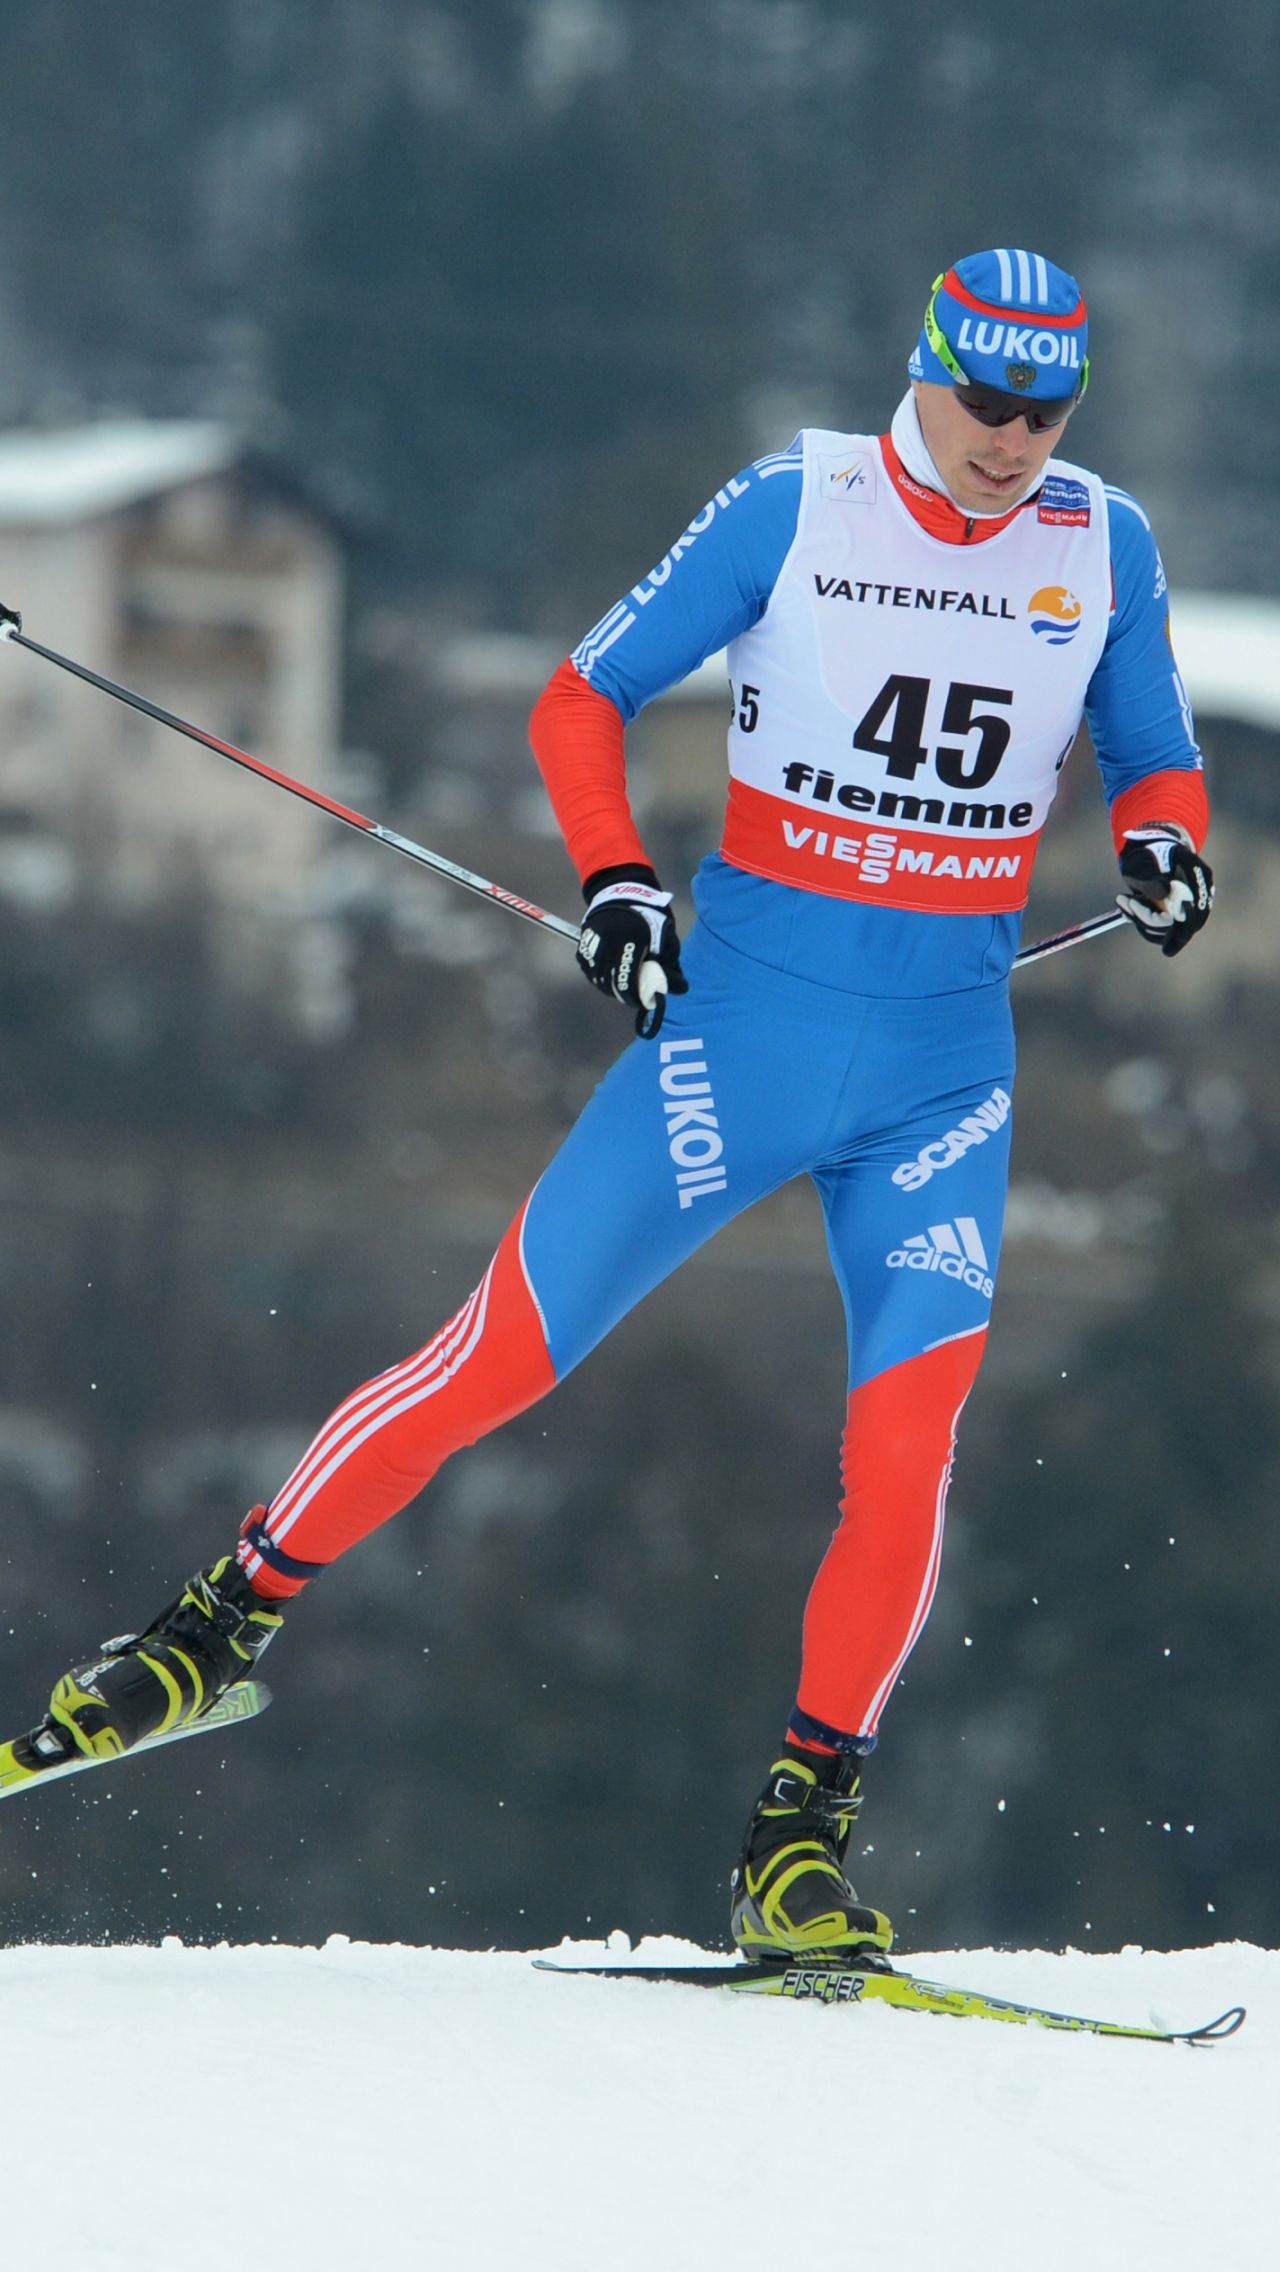 В 20 лет Сергей взял бронзу взрослого чемпионата мира – 2013, выдержав битву на последнем этапе в эстафете. Практически наголо бритый лыжник всё сделал безупречно. Мир тогда узнал про Устюгова.